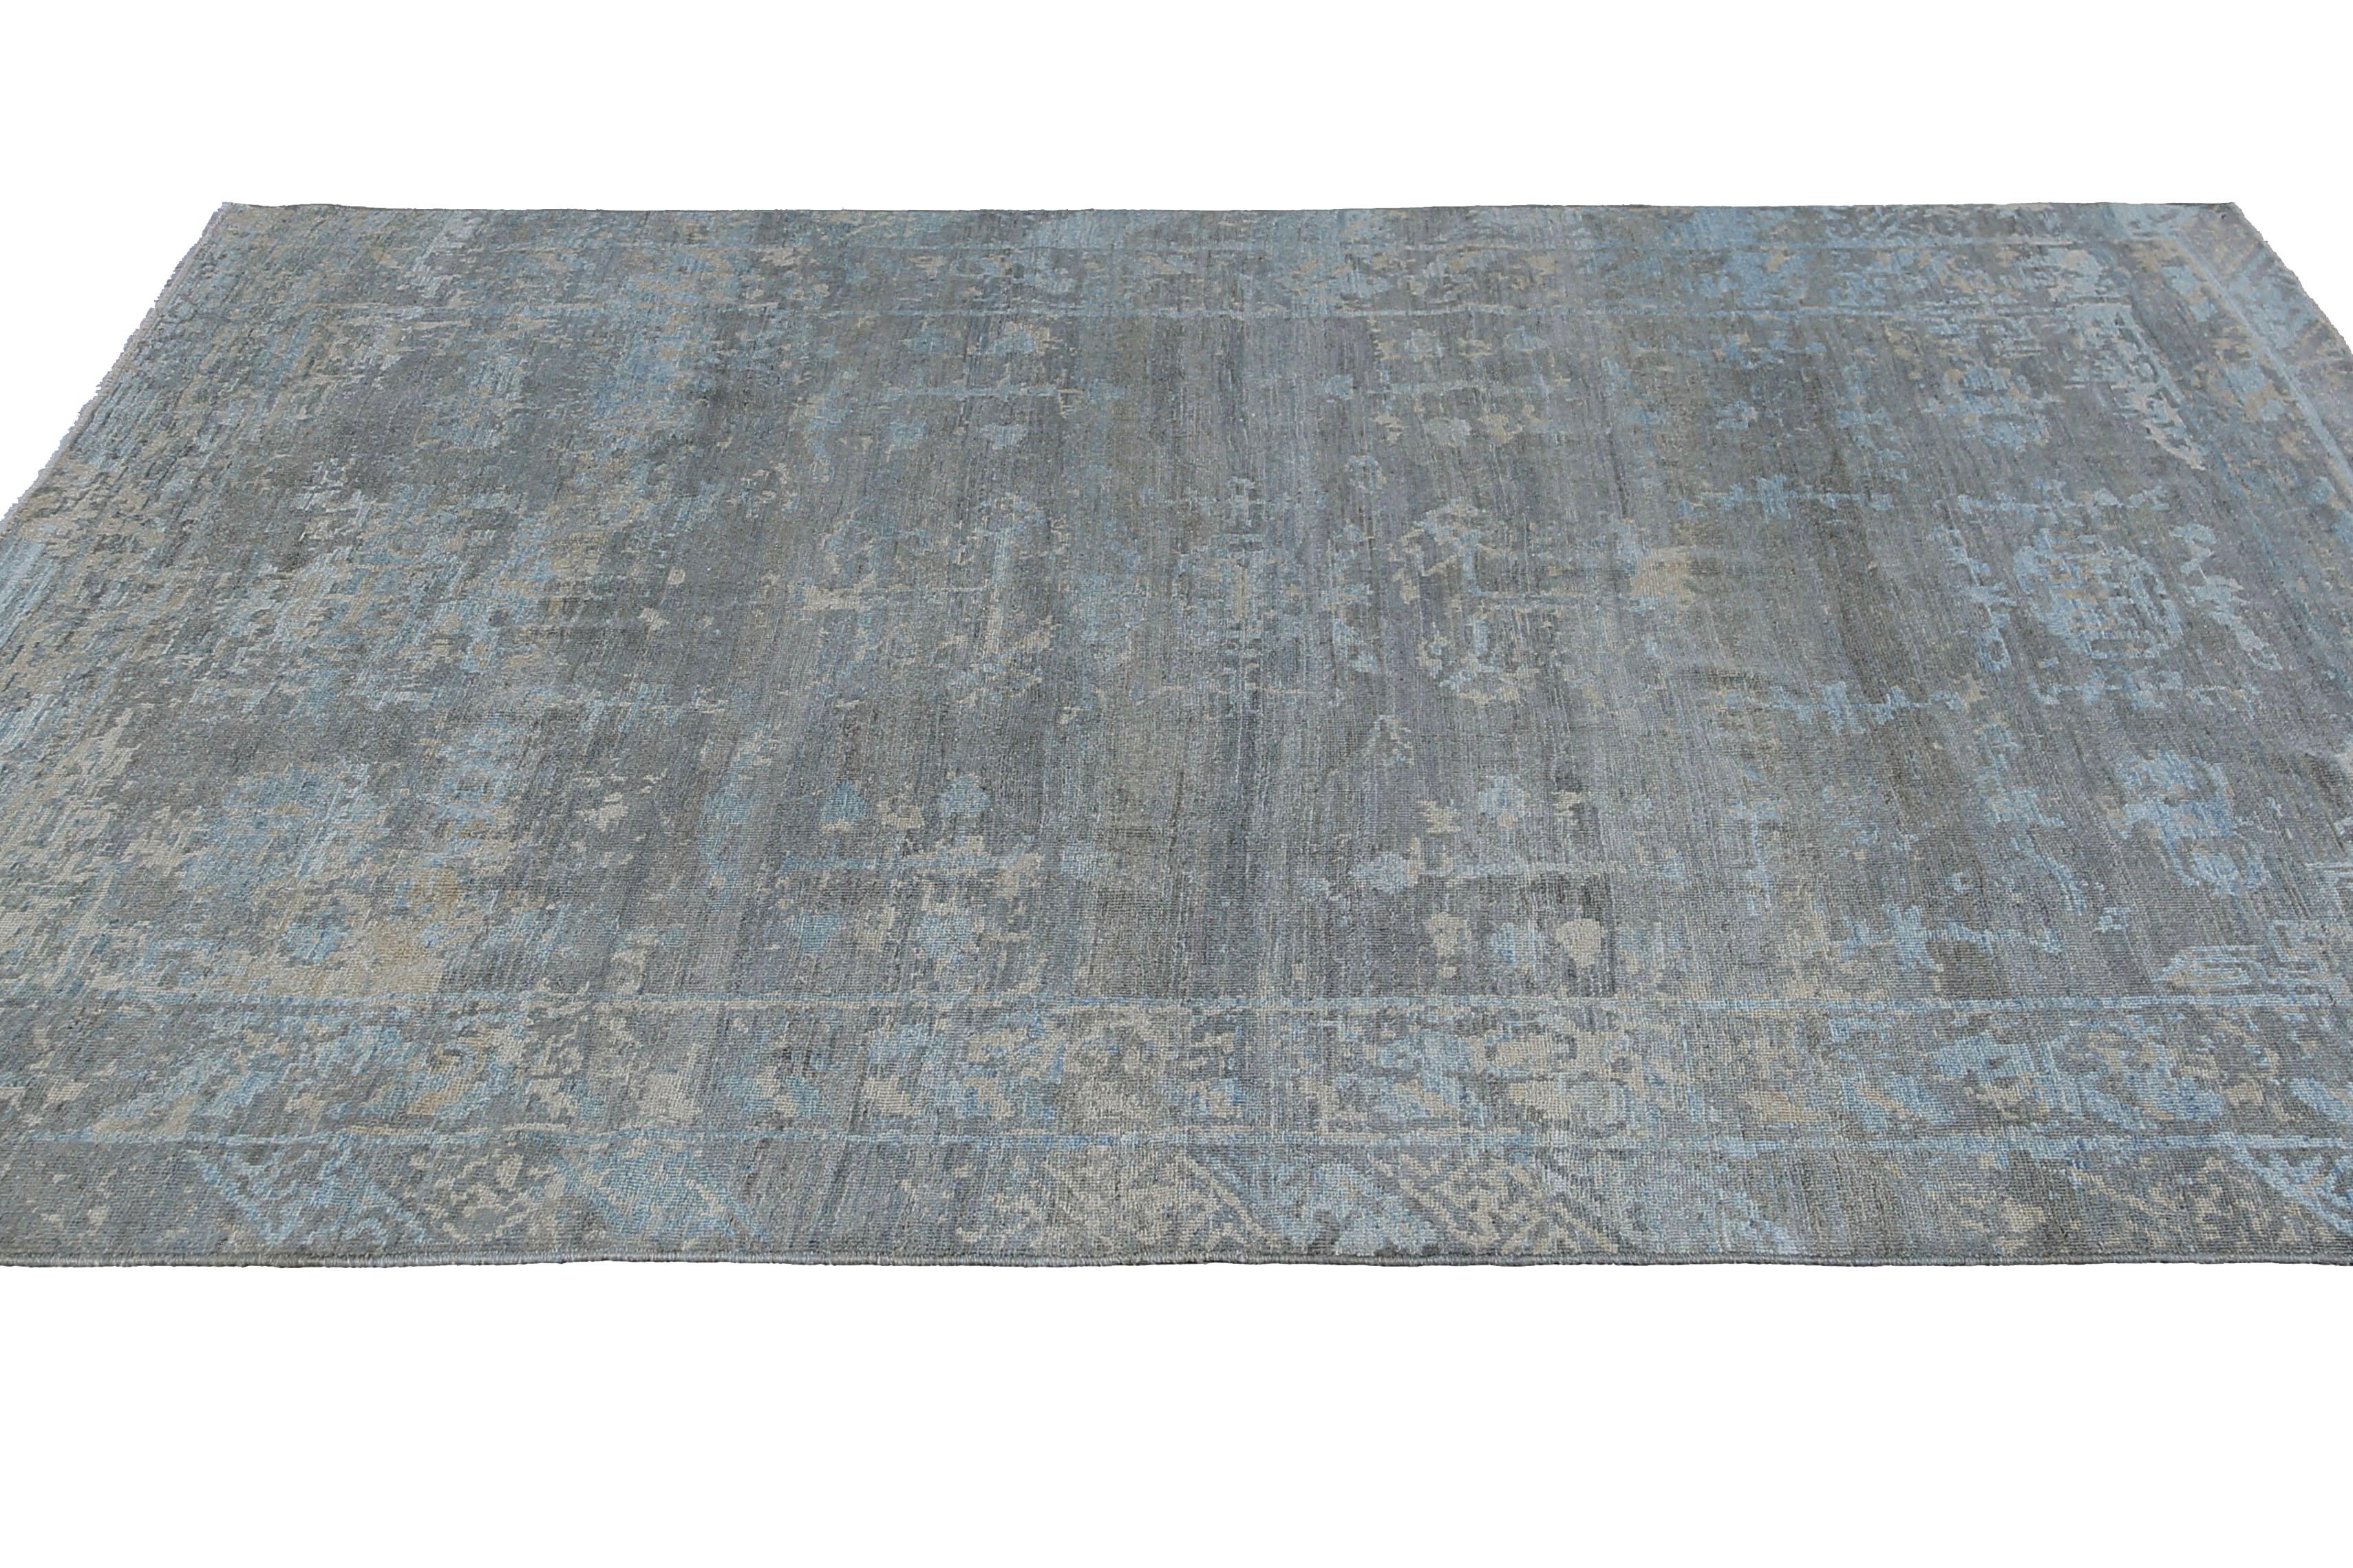 Notre tapis turc de 9'2'' x 11'10'' est un ajout étonnant à tout espace, avec des couleurs bleues profondes qui créent un sentiment de calme et de tranquillité. Fabriqué à la main avec de la laine de haute qualité, ce tapis est à la fois durable et